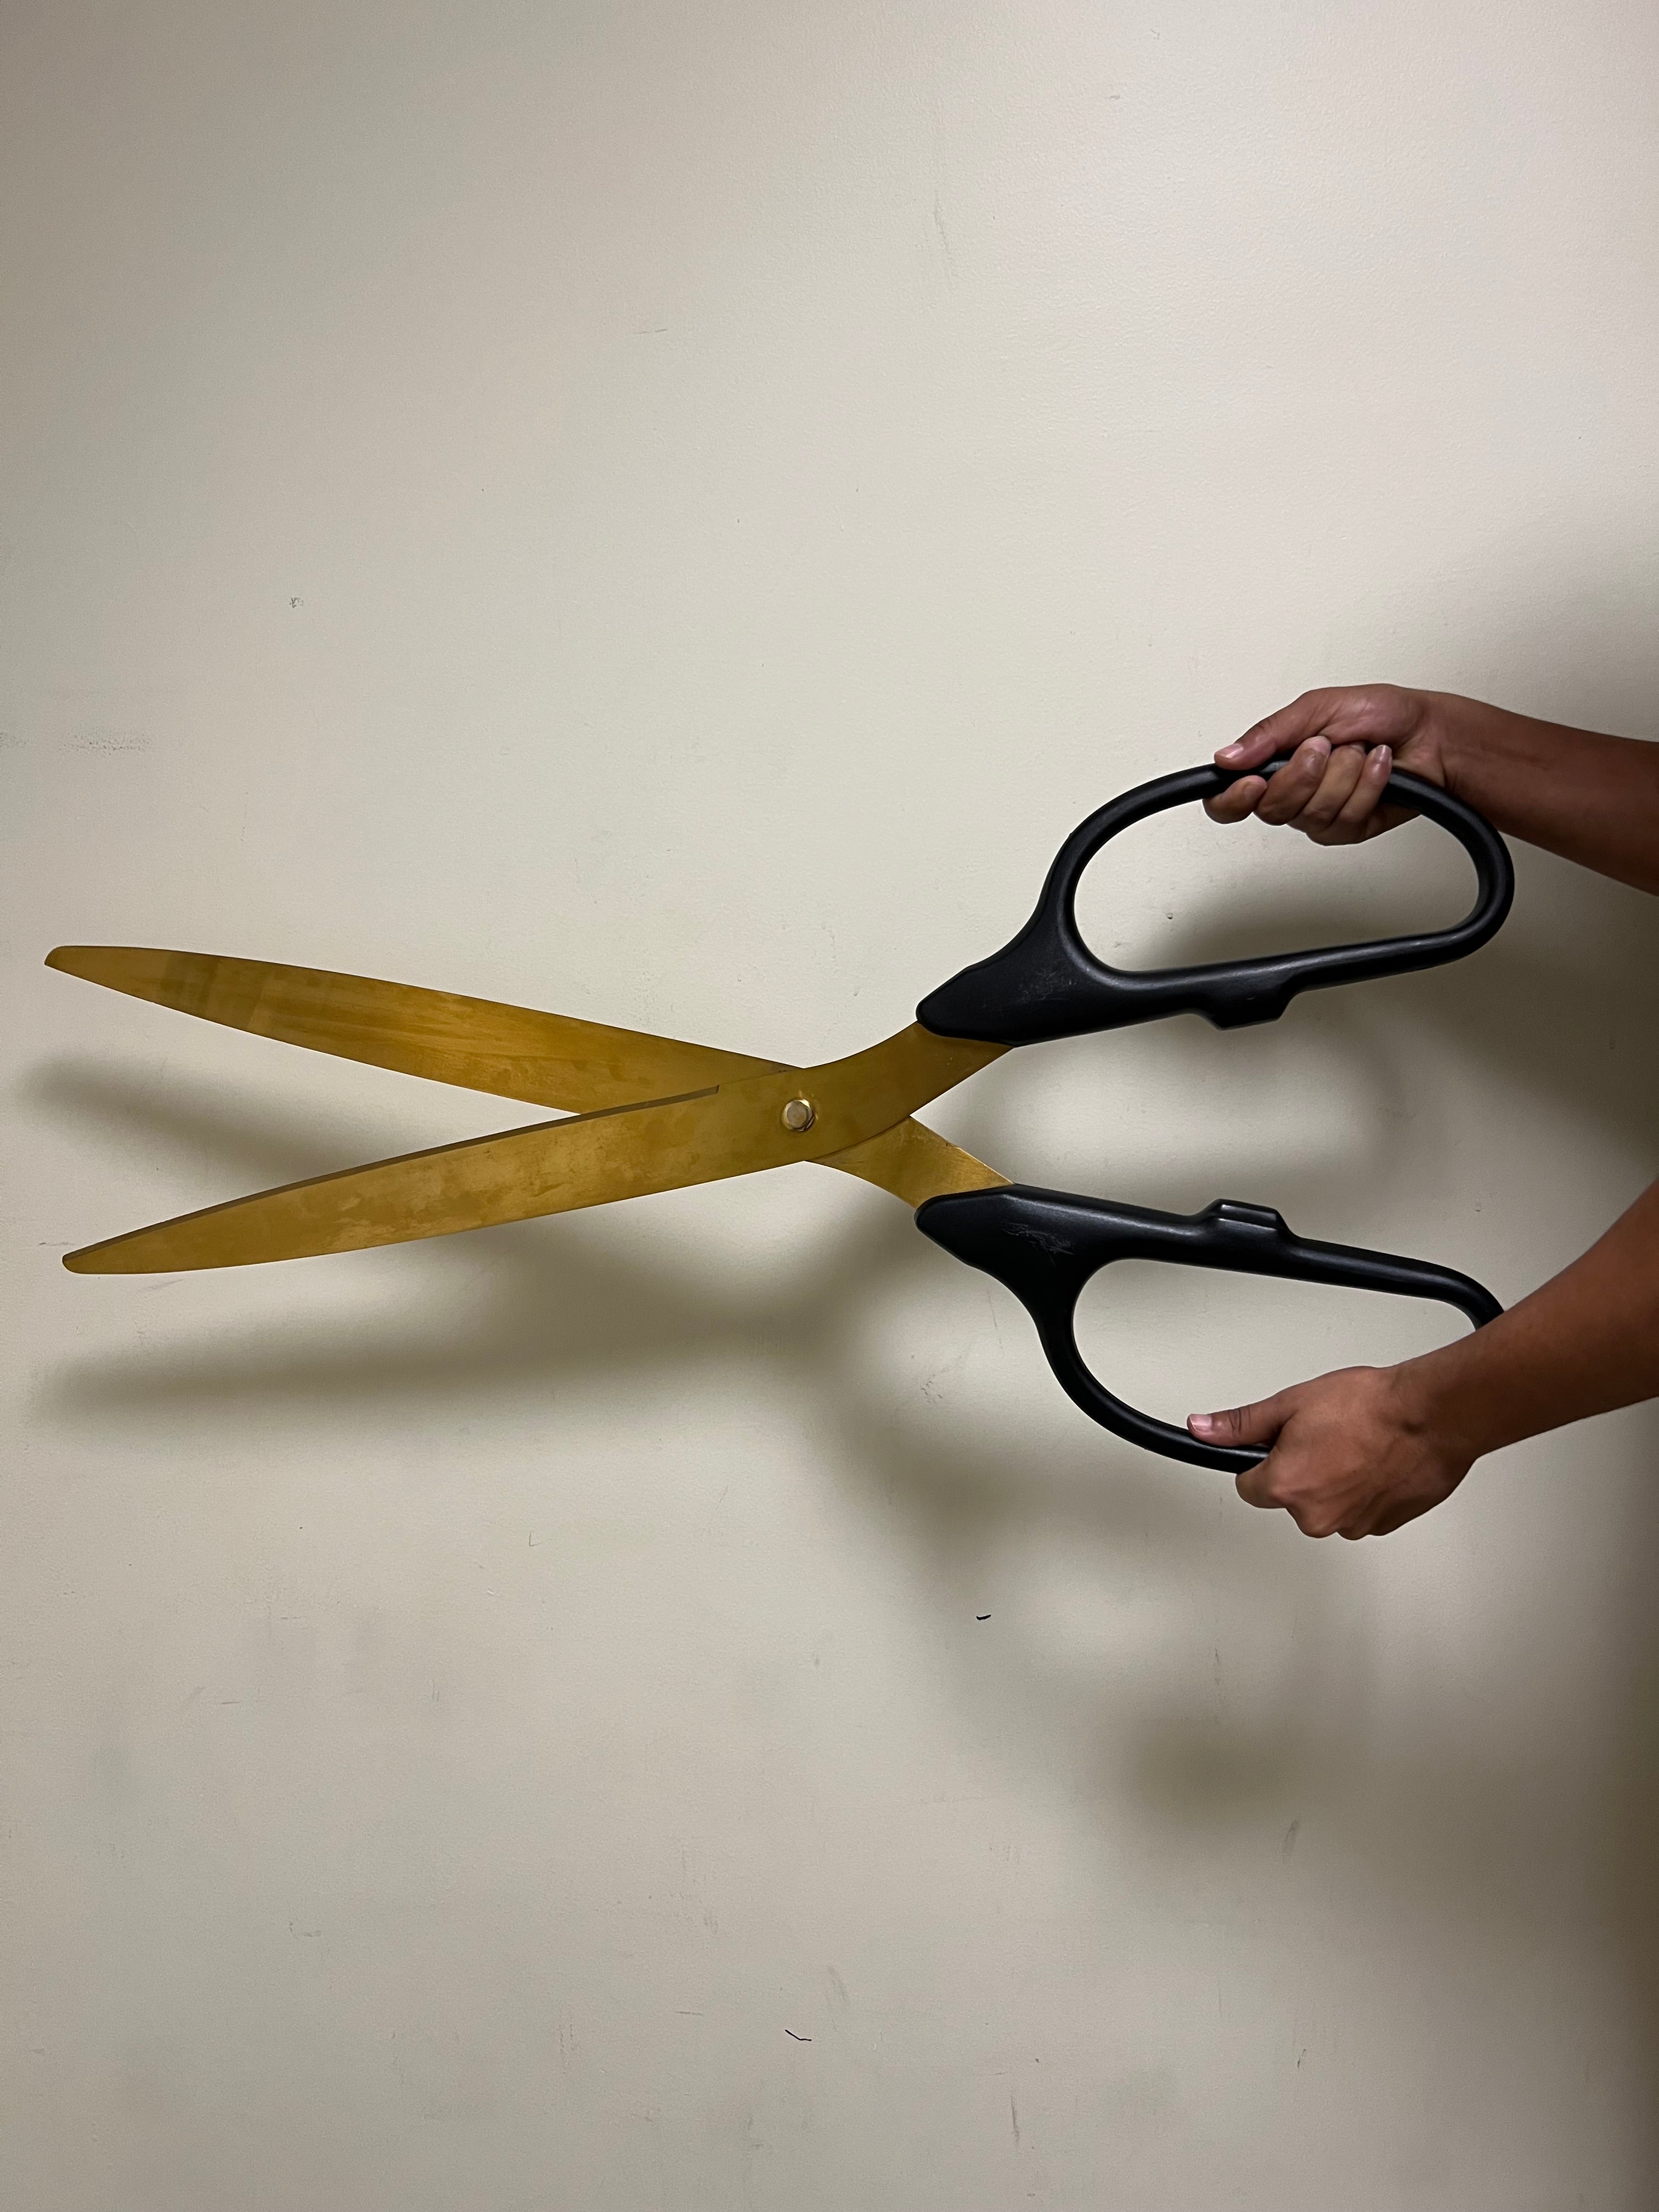 Giant Scissors